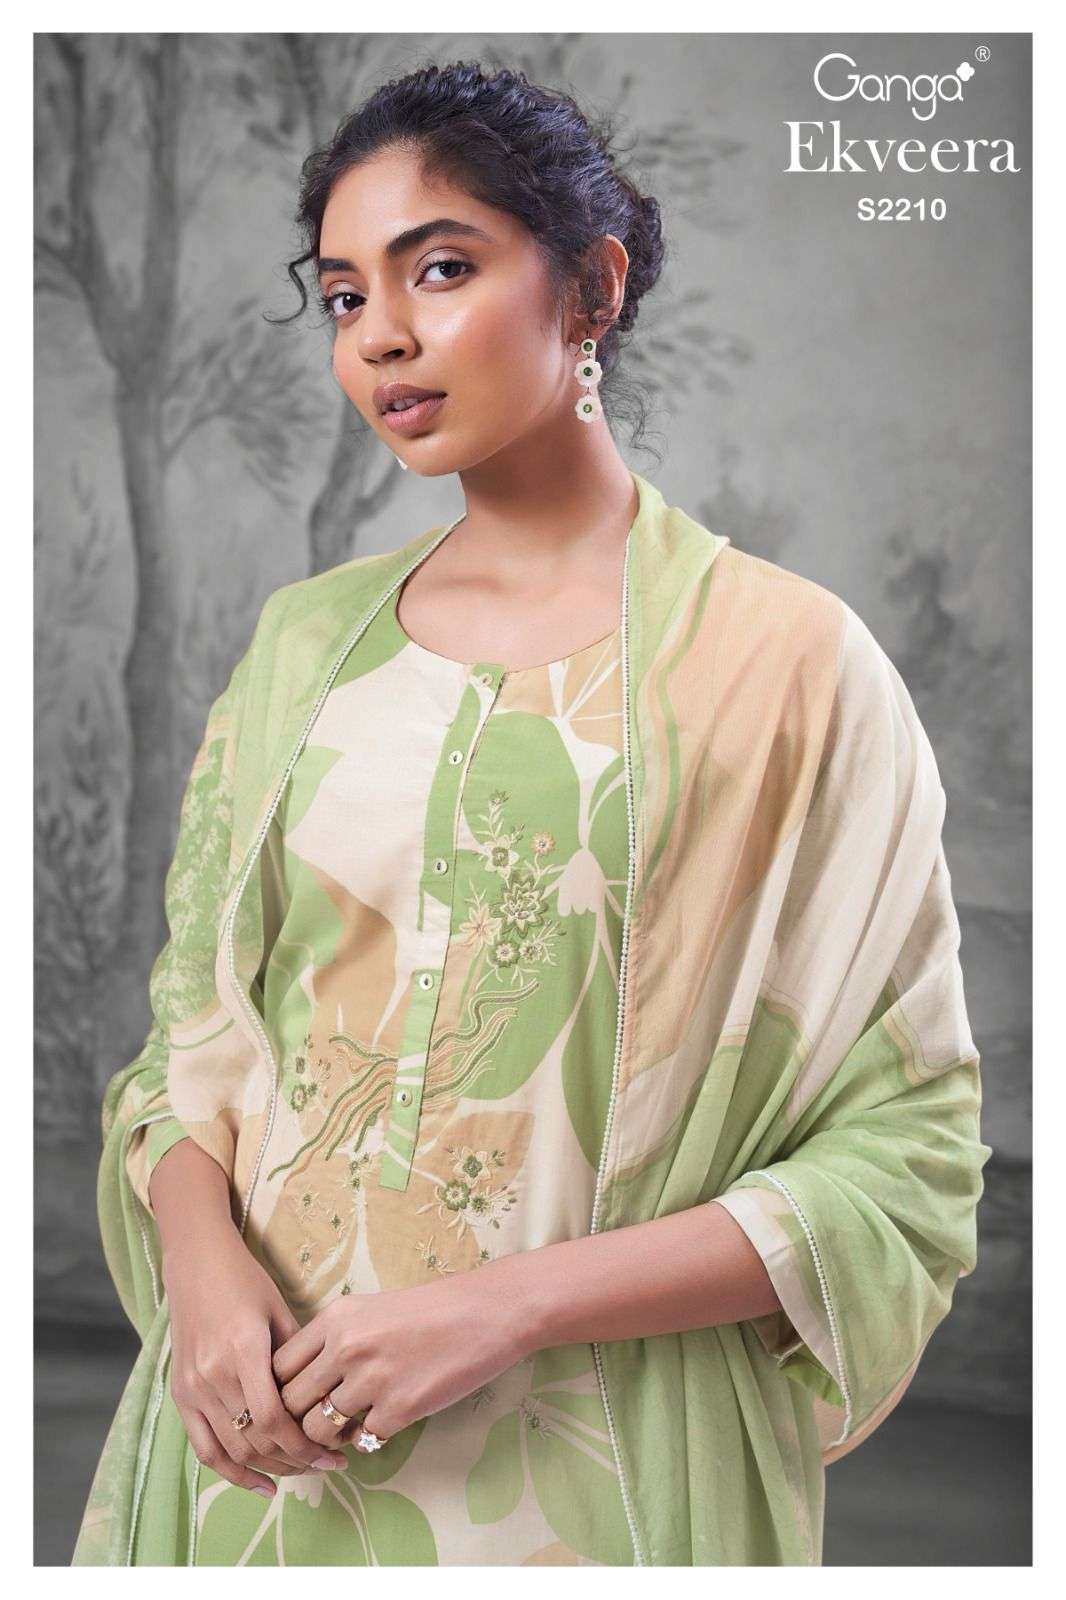 Ganga Ekveera 2210 Exclusive Cotton Premium Ladies Suit Dealers Surat